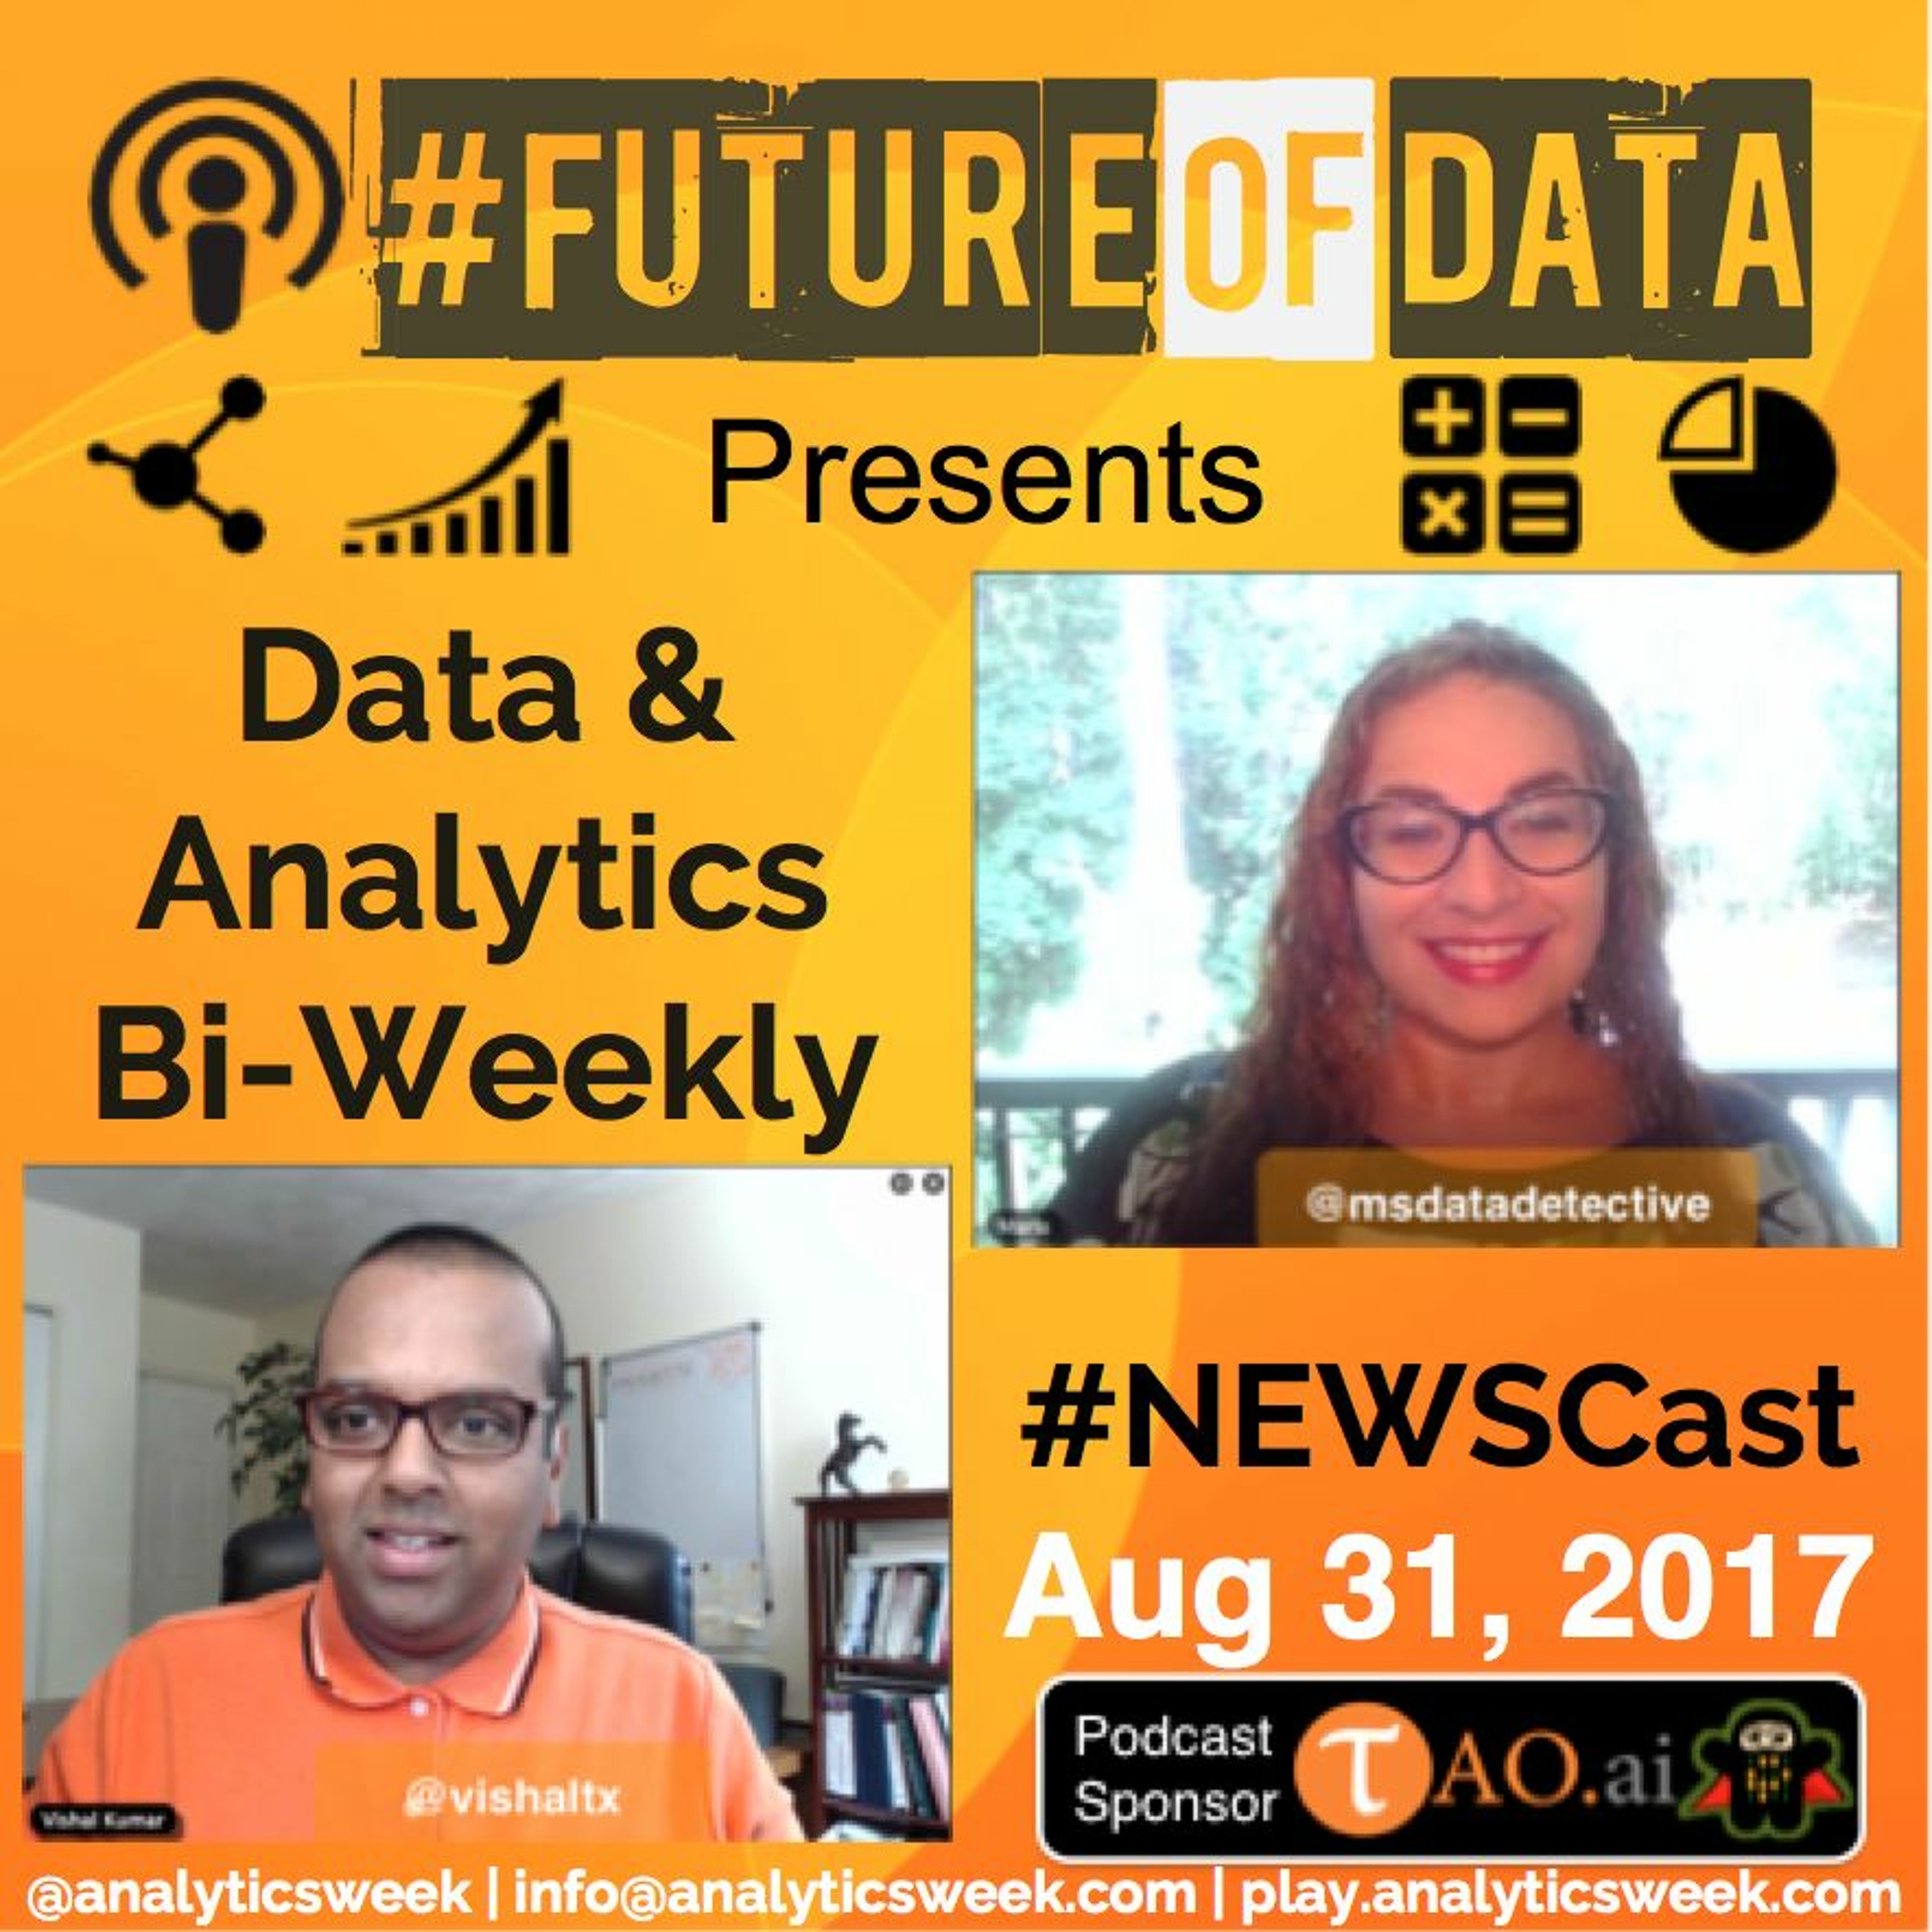 Data & Analytics Bi-Weekly Newsletter Cast Aug 31, 2017